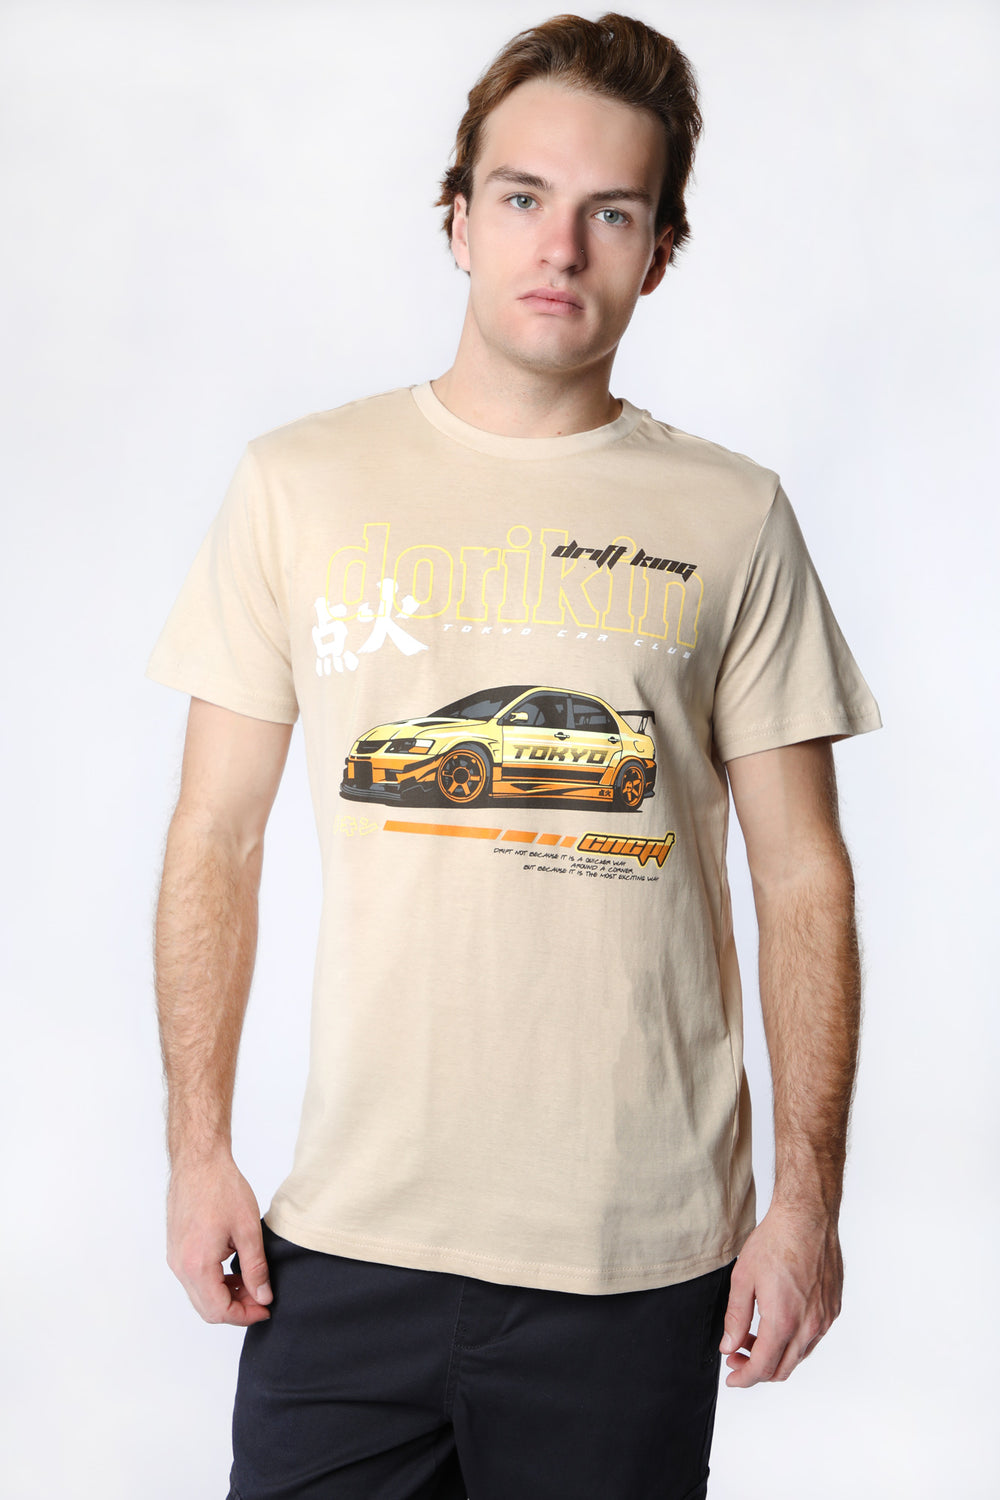 T-Shirt Imprimé Drift King West49 Homme T-Shirt Imprimé Drift King West49 Homme